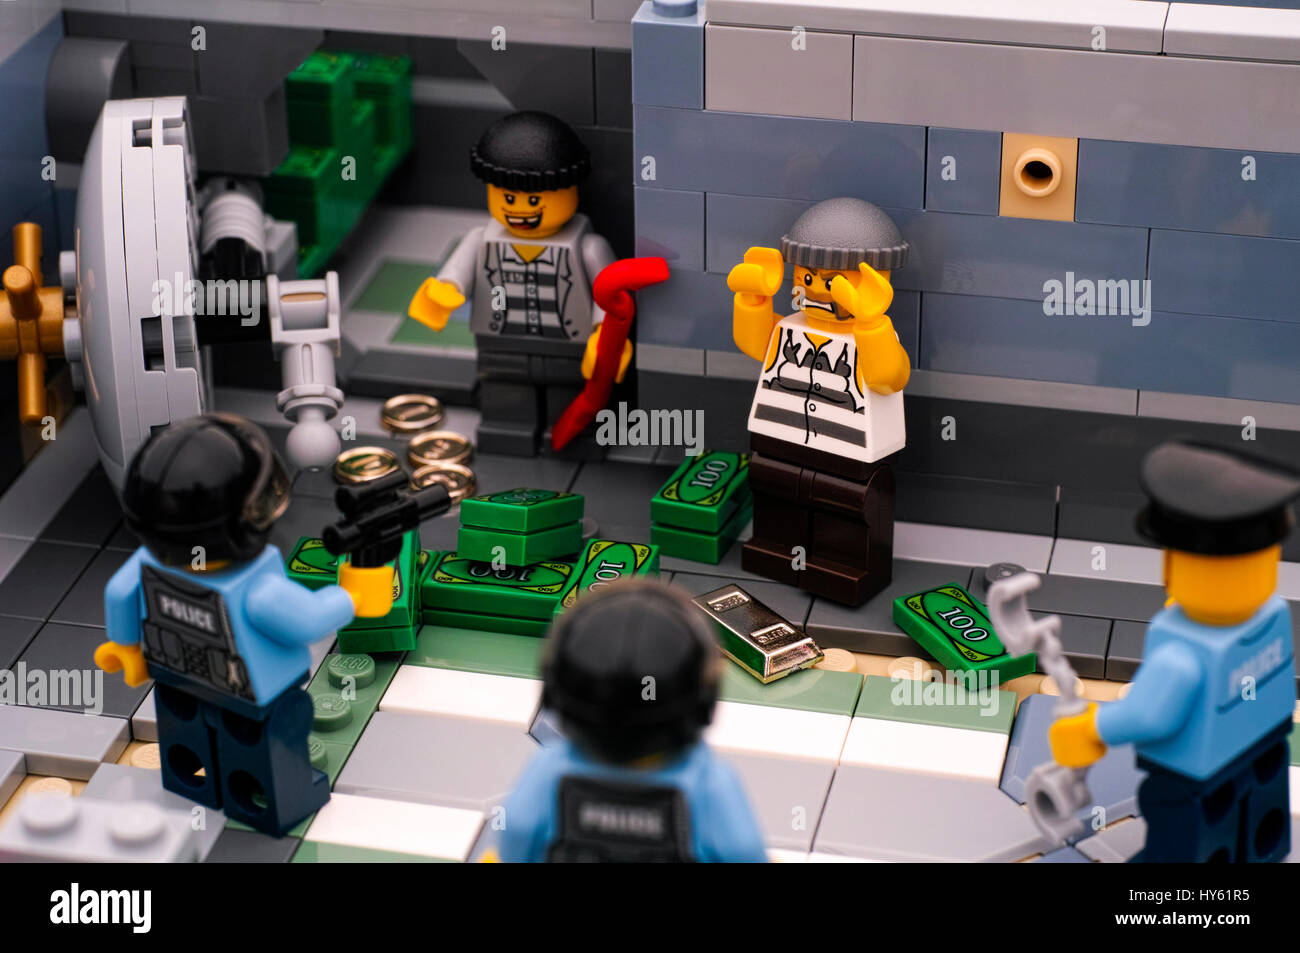 Tambov, Fédération de Russie - janvier 08, 2017 banque Lego cambriolage. Deux voleurs arrêtés par trois policemans après ils se porte de chambre forte de banque et tak Banque D'Images